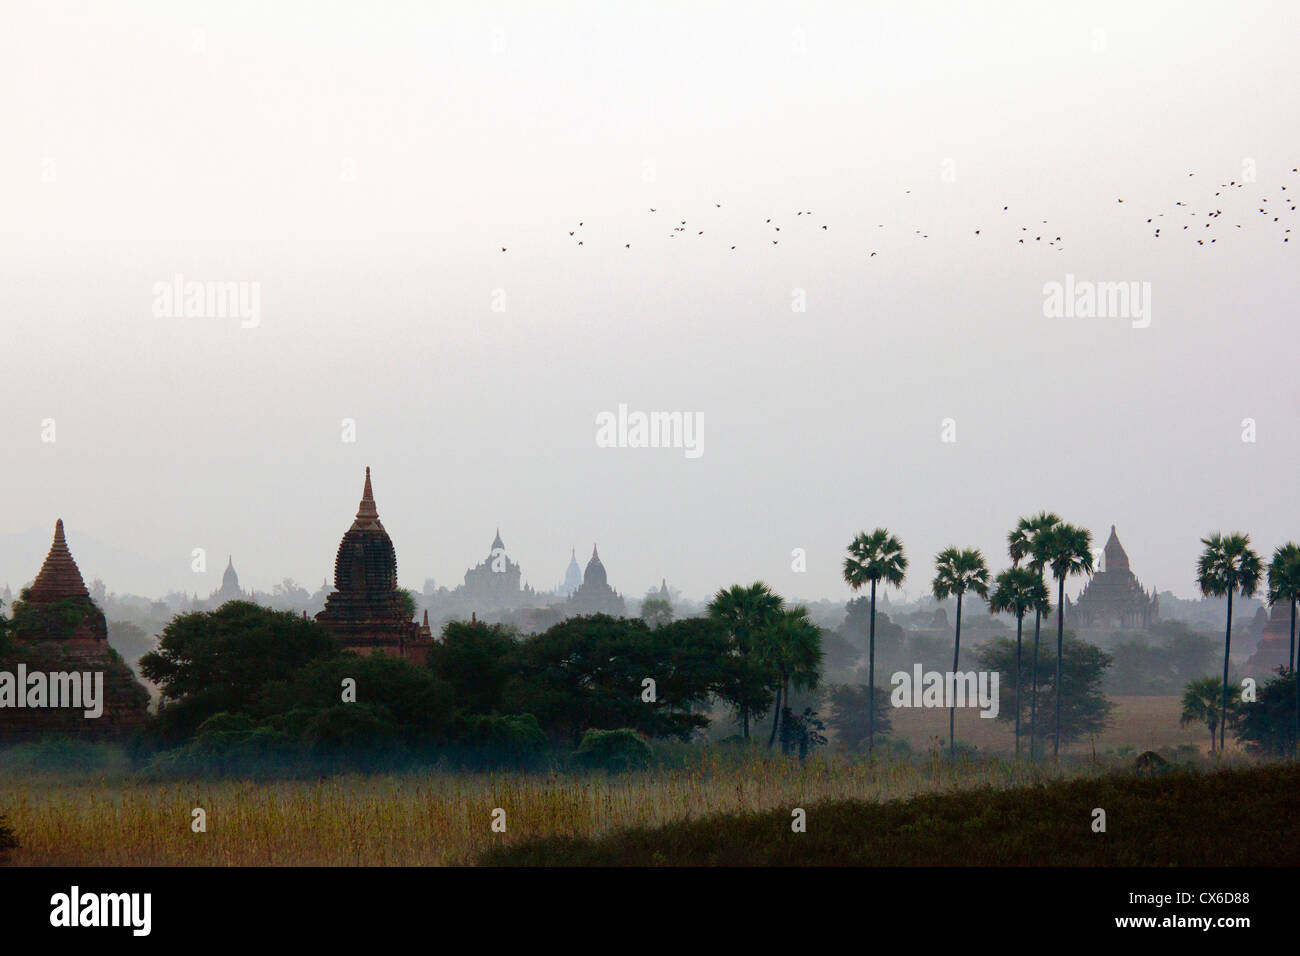 Temples of Bagan, Burma Stock Photo